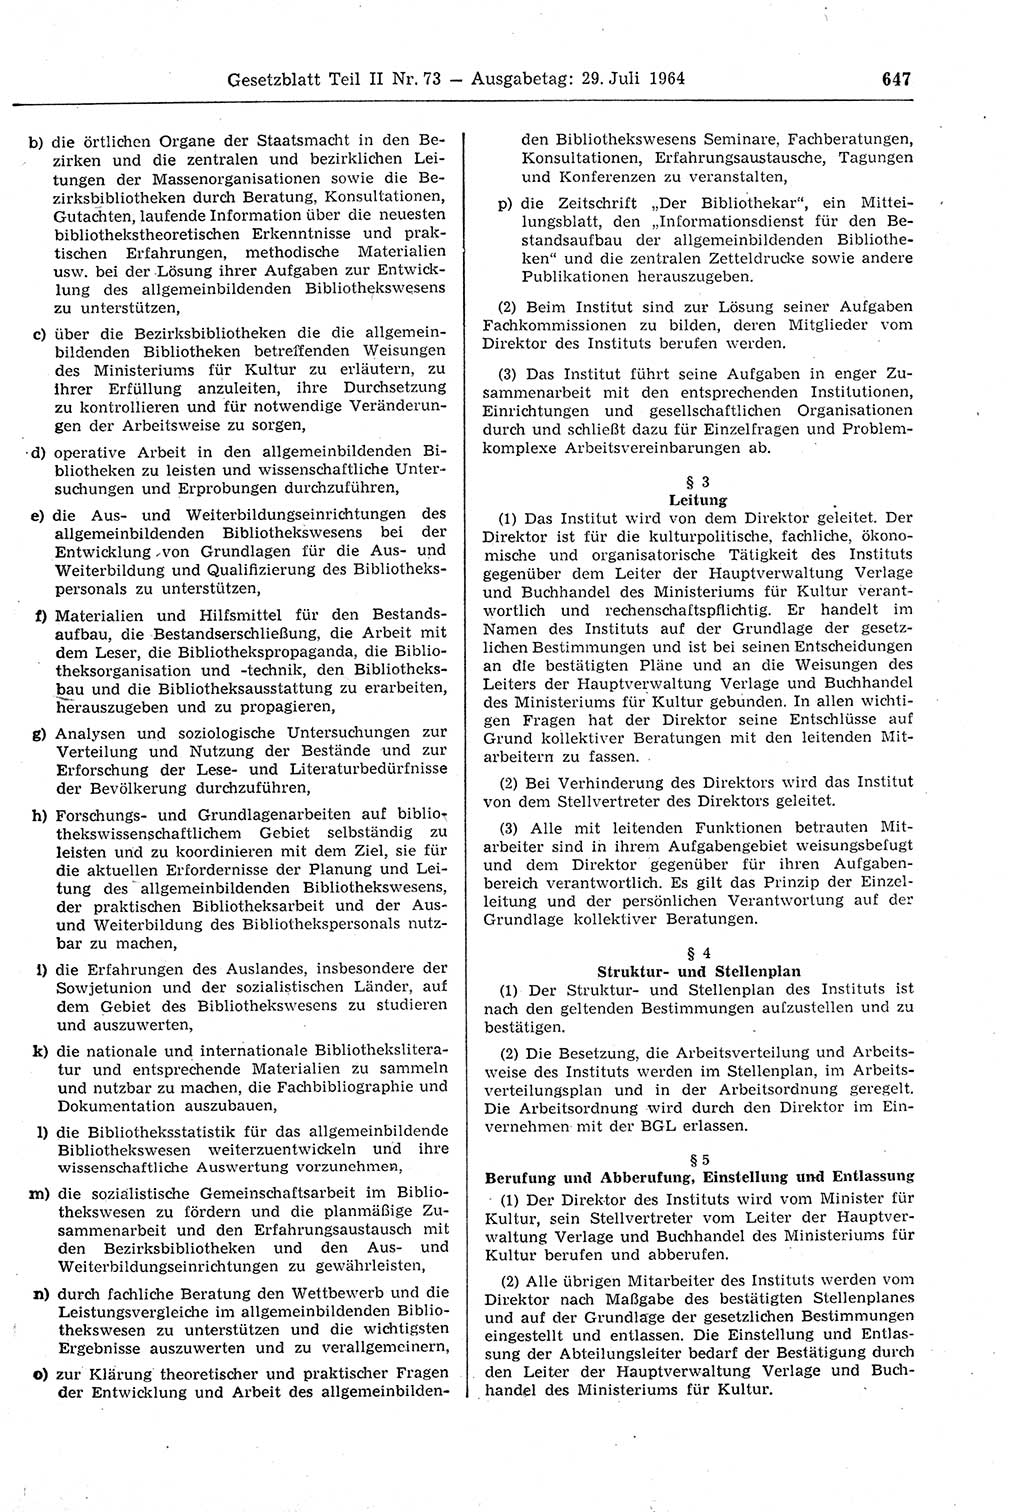 Gesetzblatt (GBl.) der Deutschen Demokratischen Republik (DDR) Teil ⅠⅠ 1964, Seite 647 (GBl. DDR ⅠⅠ 1964, S. 647)